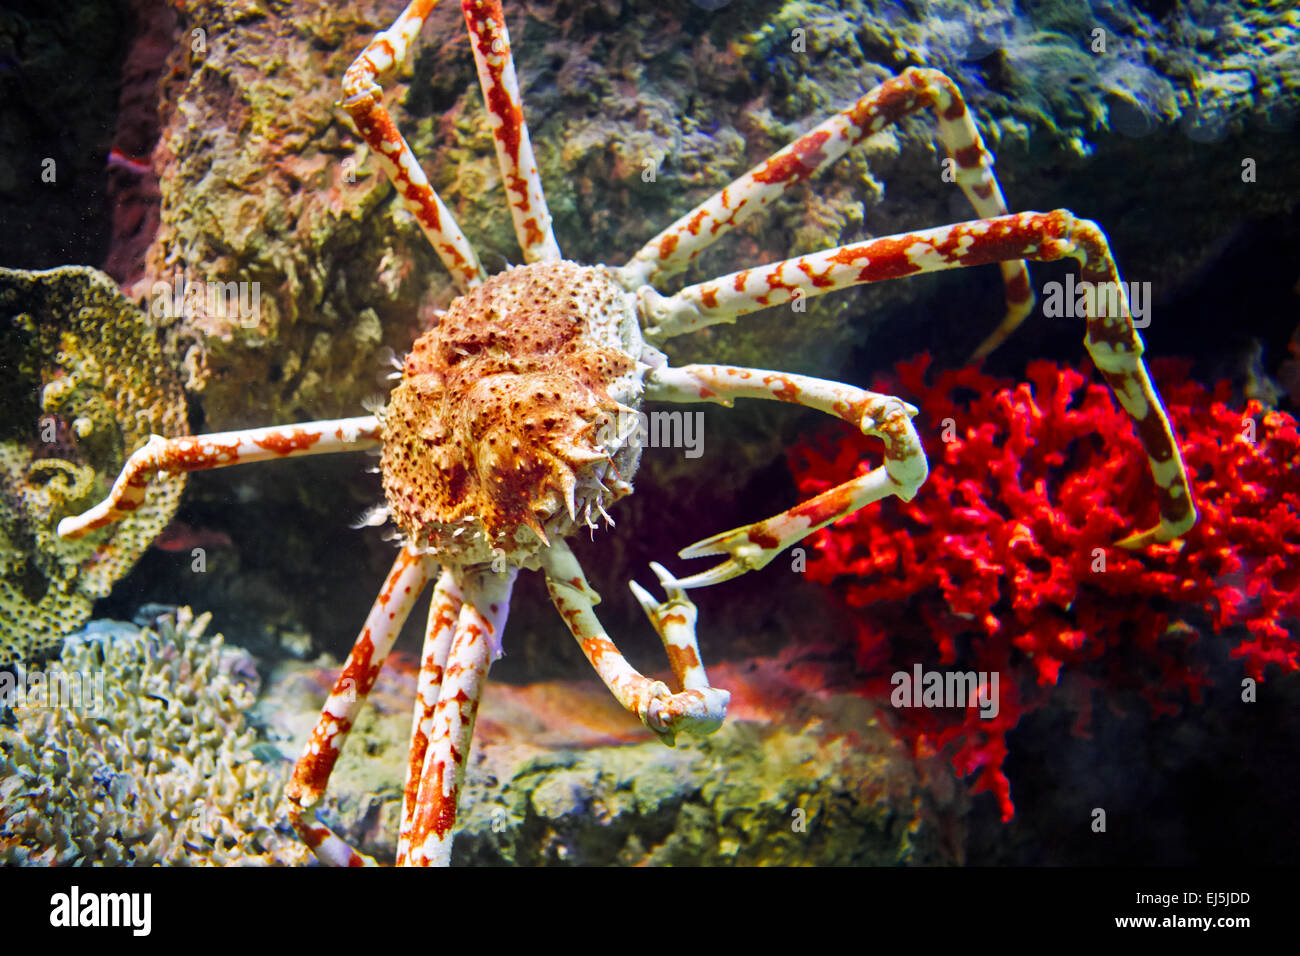 Araignée de mer japonais. Nom scientifique : Macrocheira kaemferi. Vinpearl Land Aquarium, Phu Quoc, Vietnam. Banque D'Images